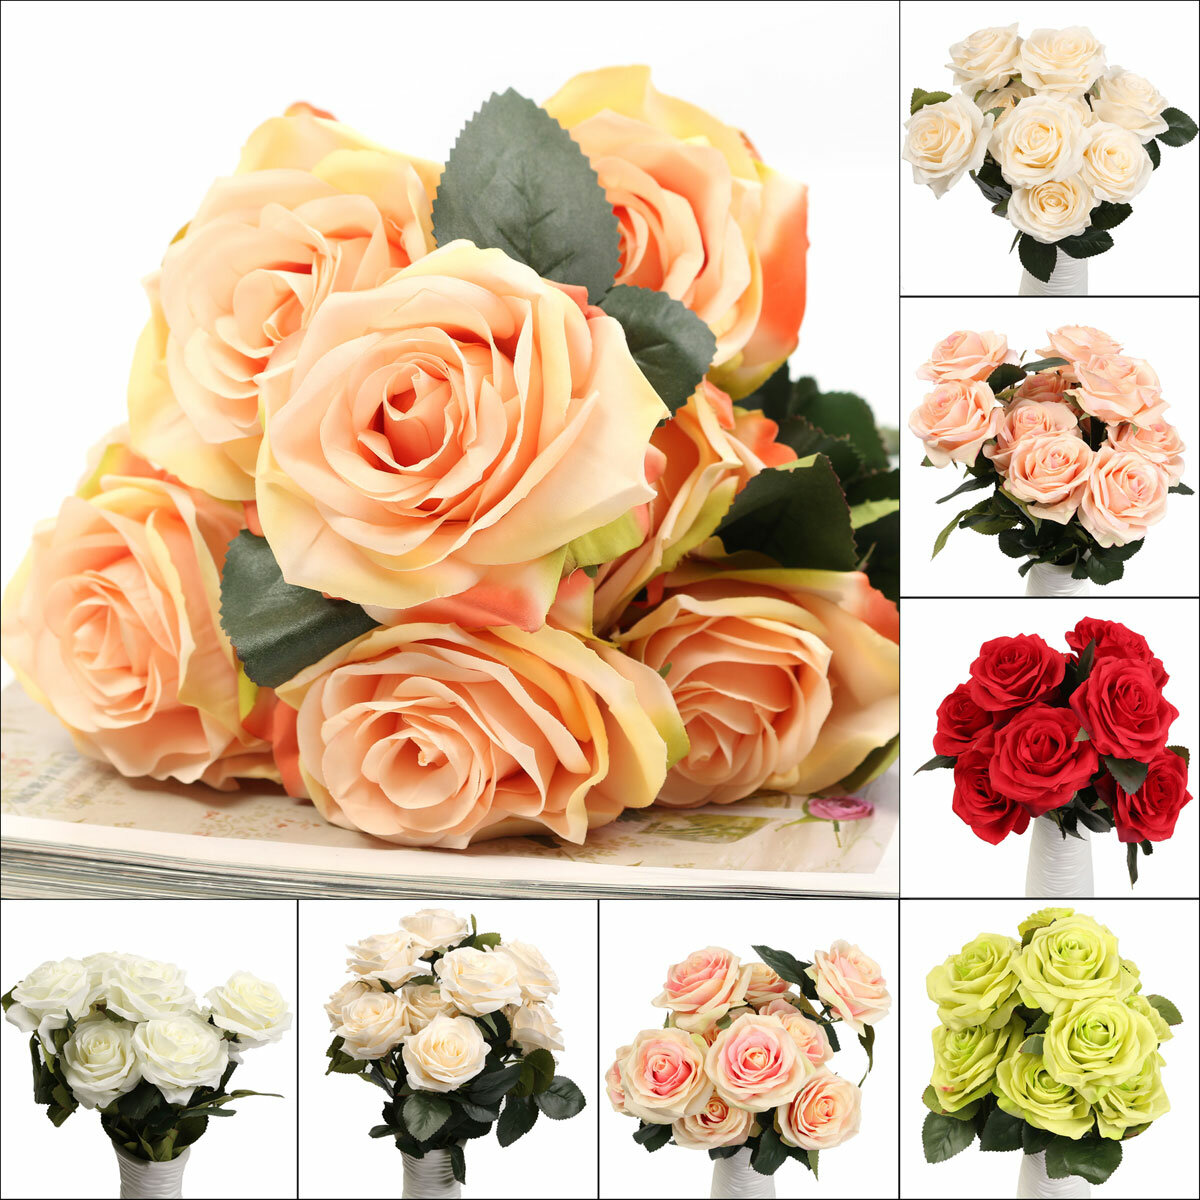 10 प्रमुख कृत्रिम रेशम फूल गुलाब शादी गुलदस्ता पार्टी घर की सजावट